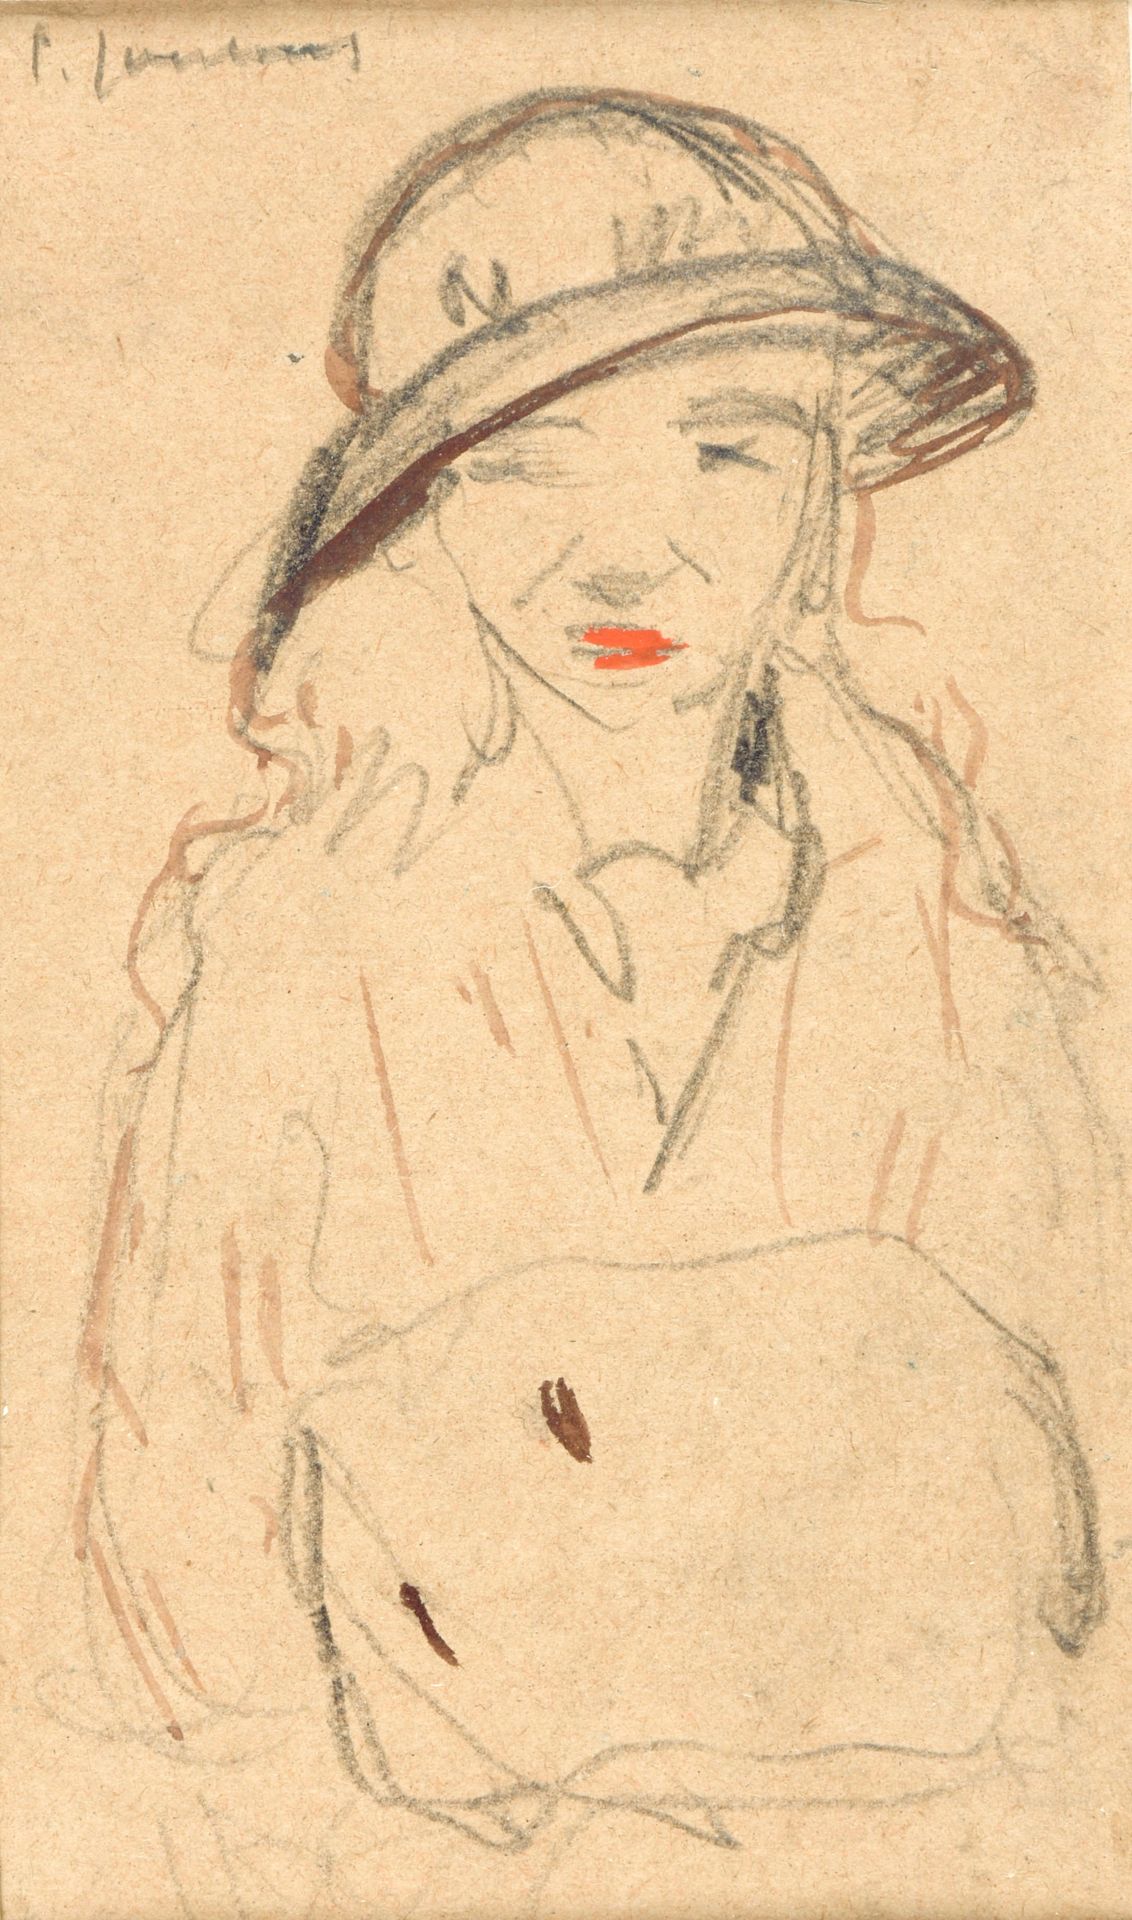 JOOSTENS, Paul (1889-1960) Vrouwenportret

Acquerello (13,5 x 12 cm), getekend r&hellip;